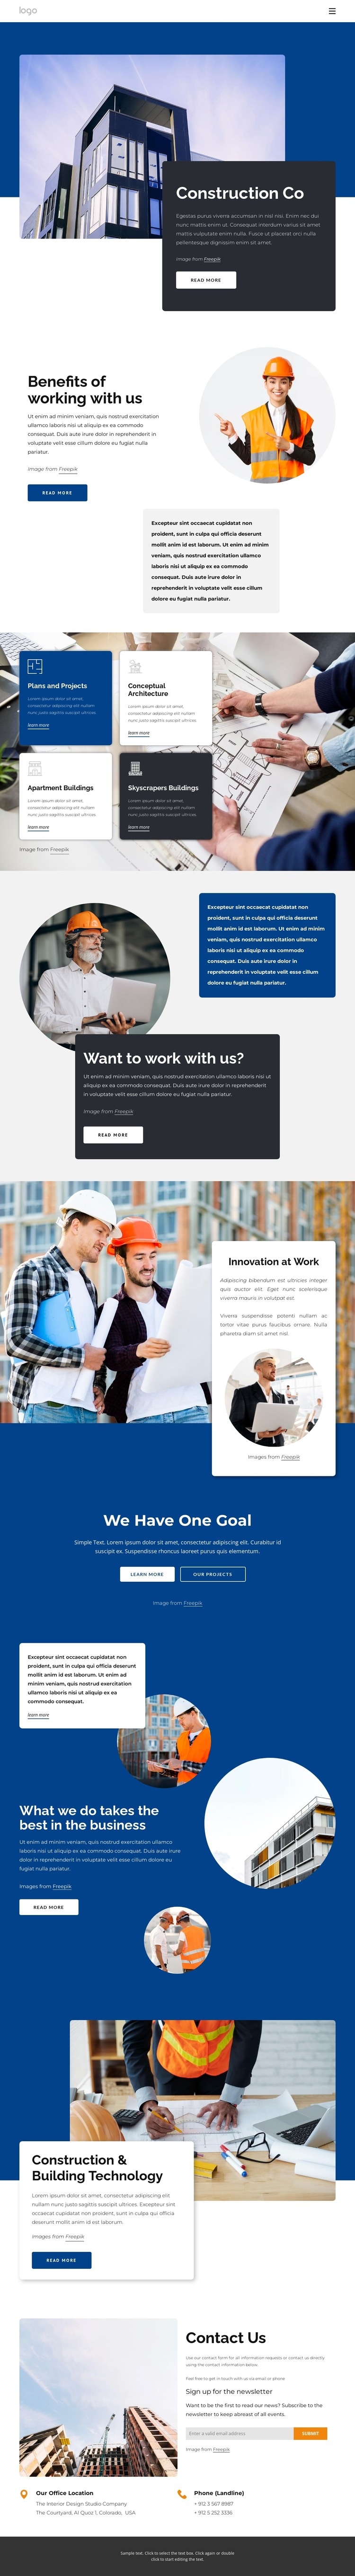 Construction co Web Page Design